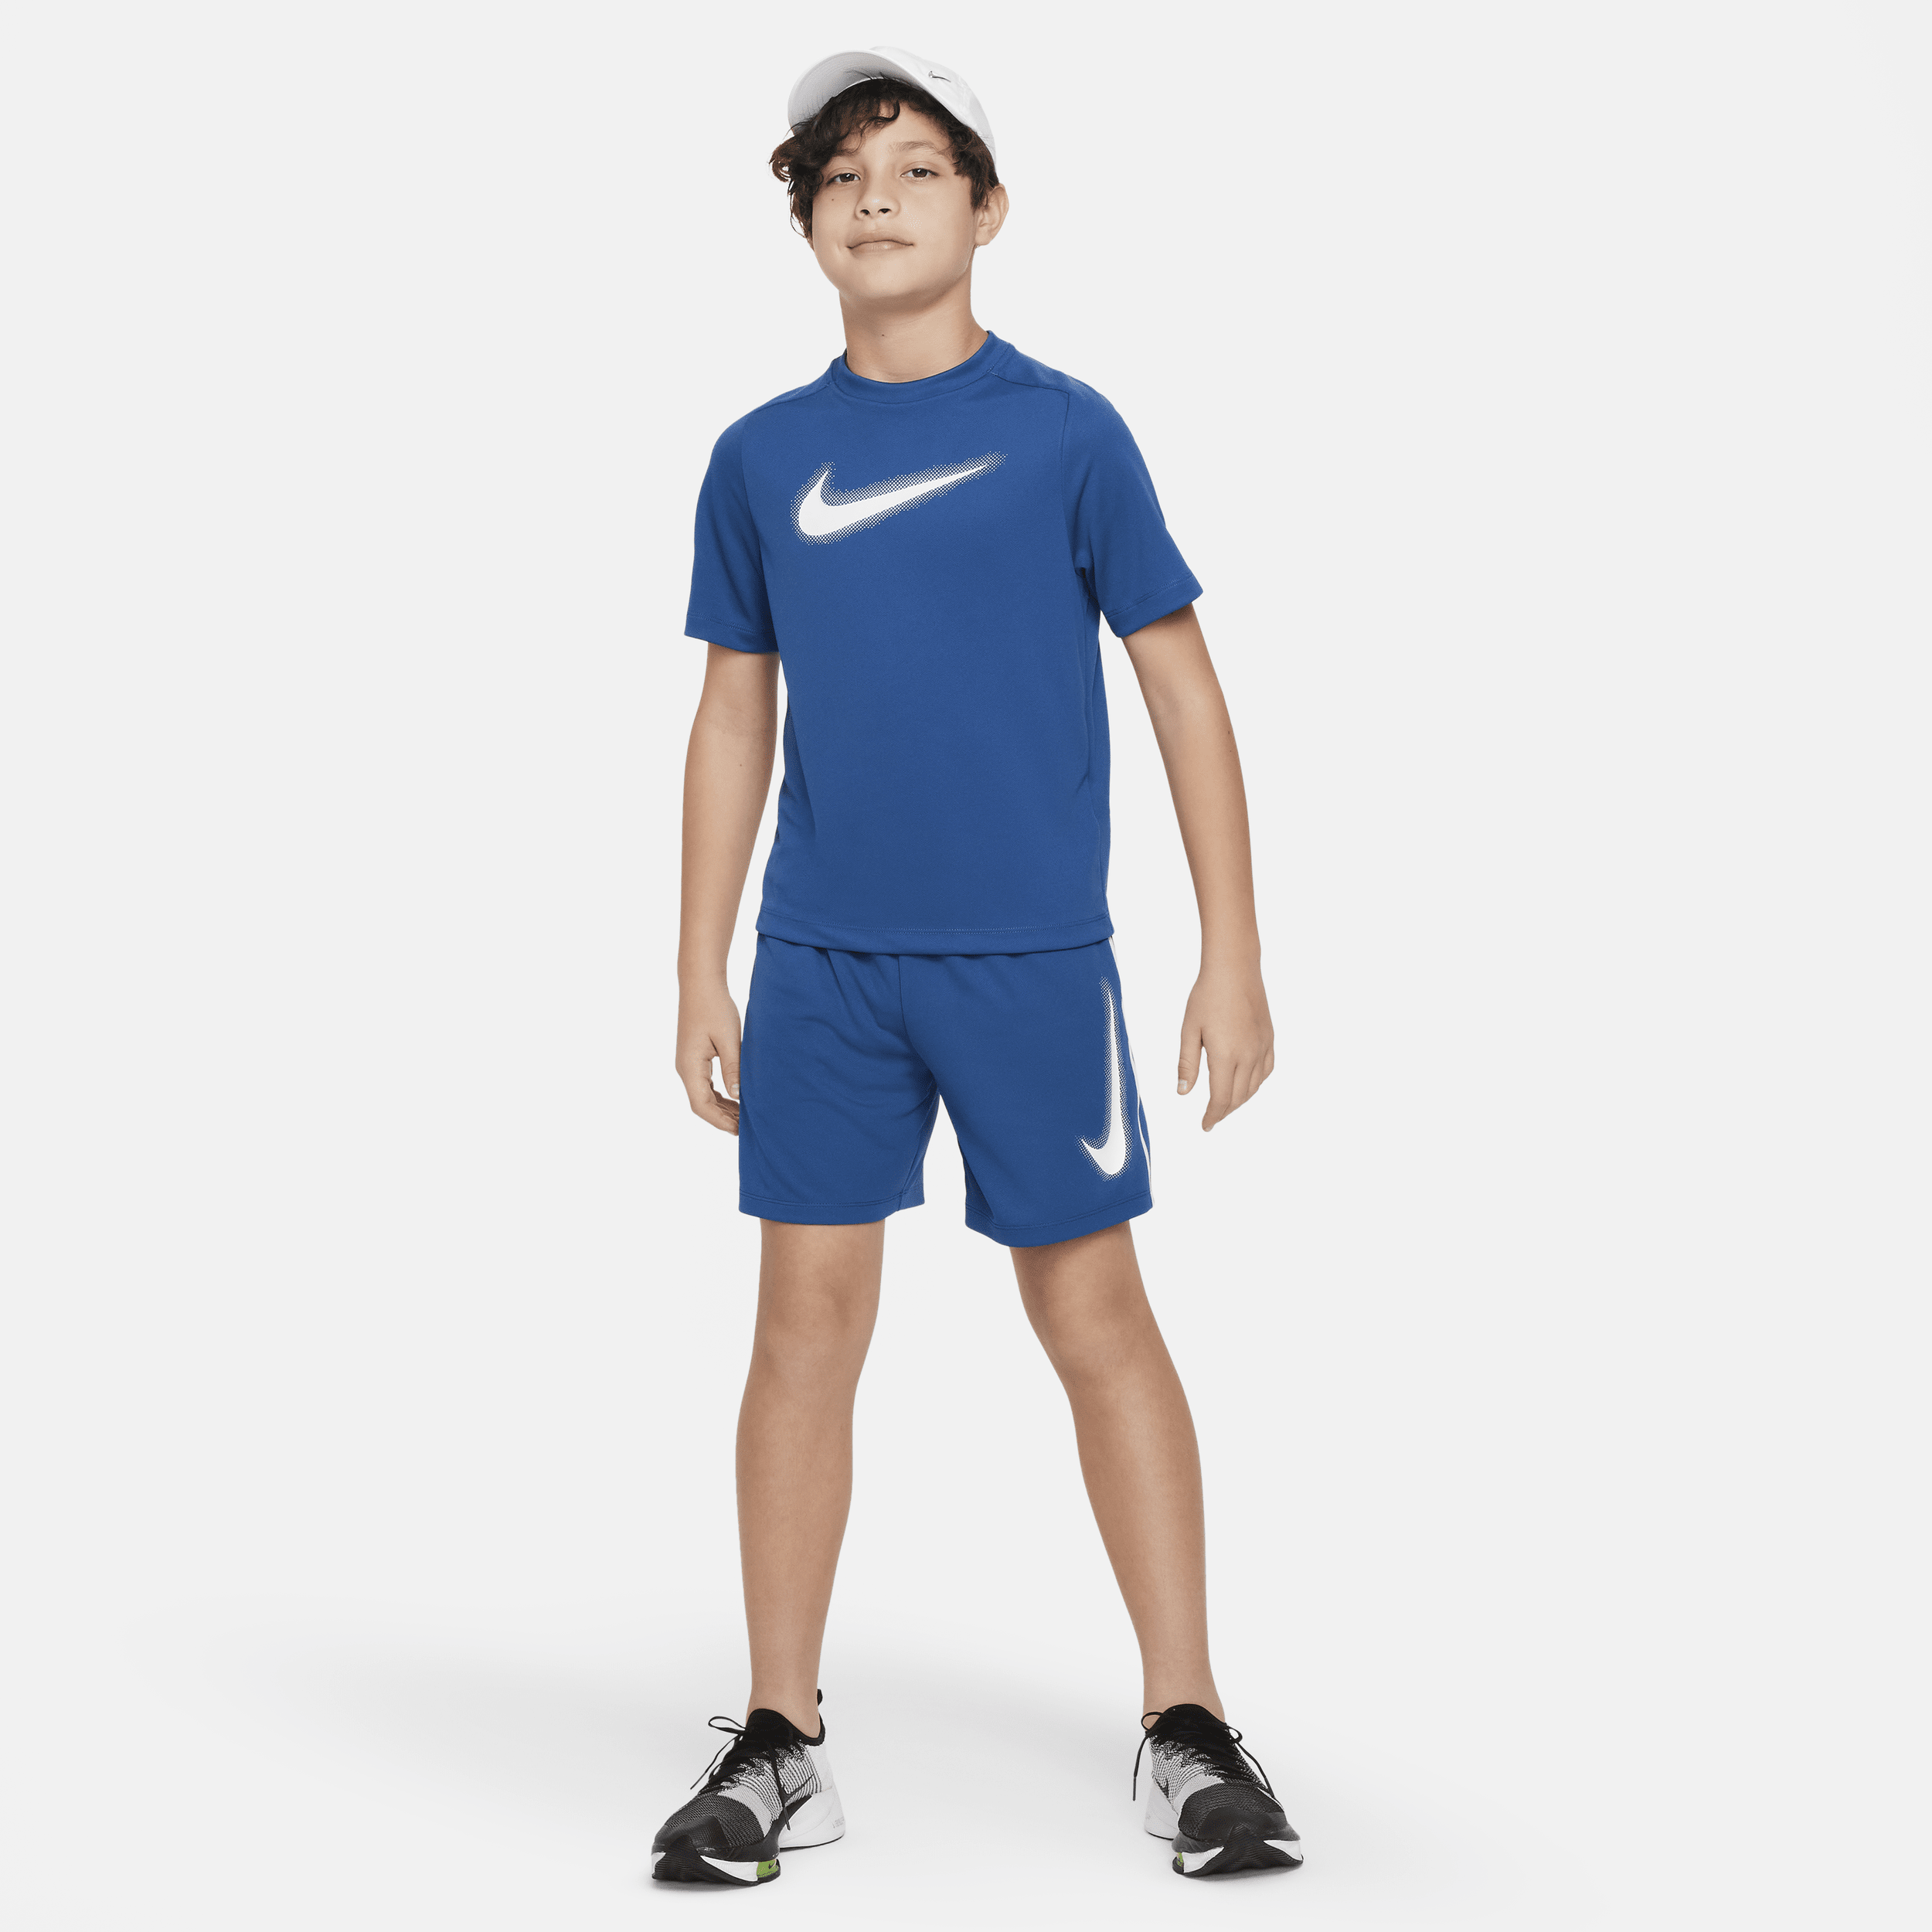 Nike Multi Dri-FIT trainingstop met graphic voor jongens Blauw